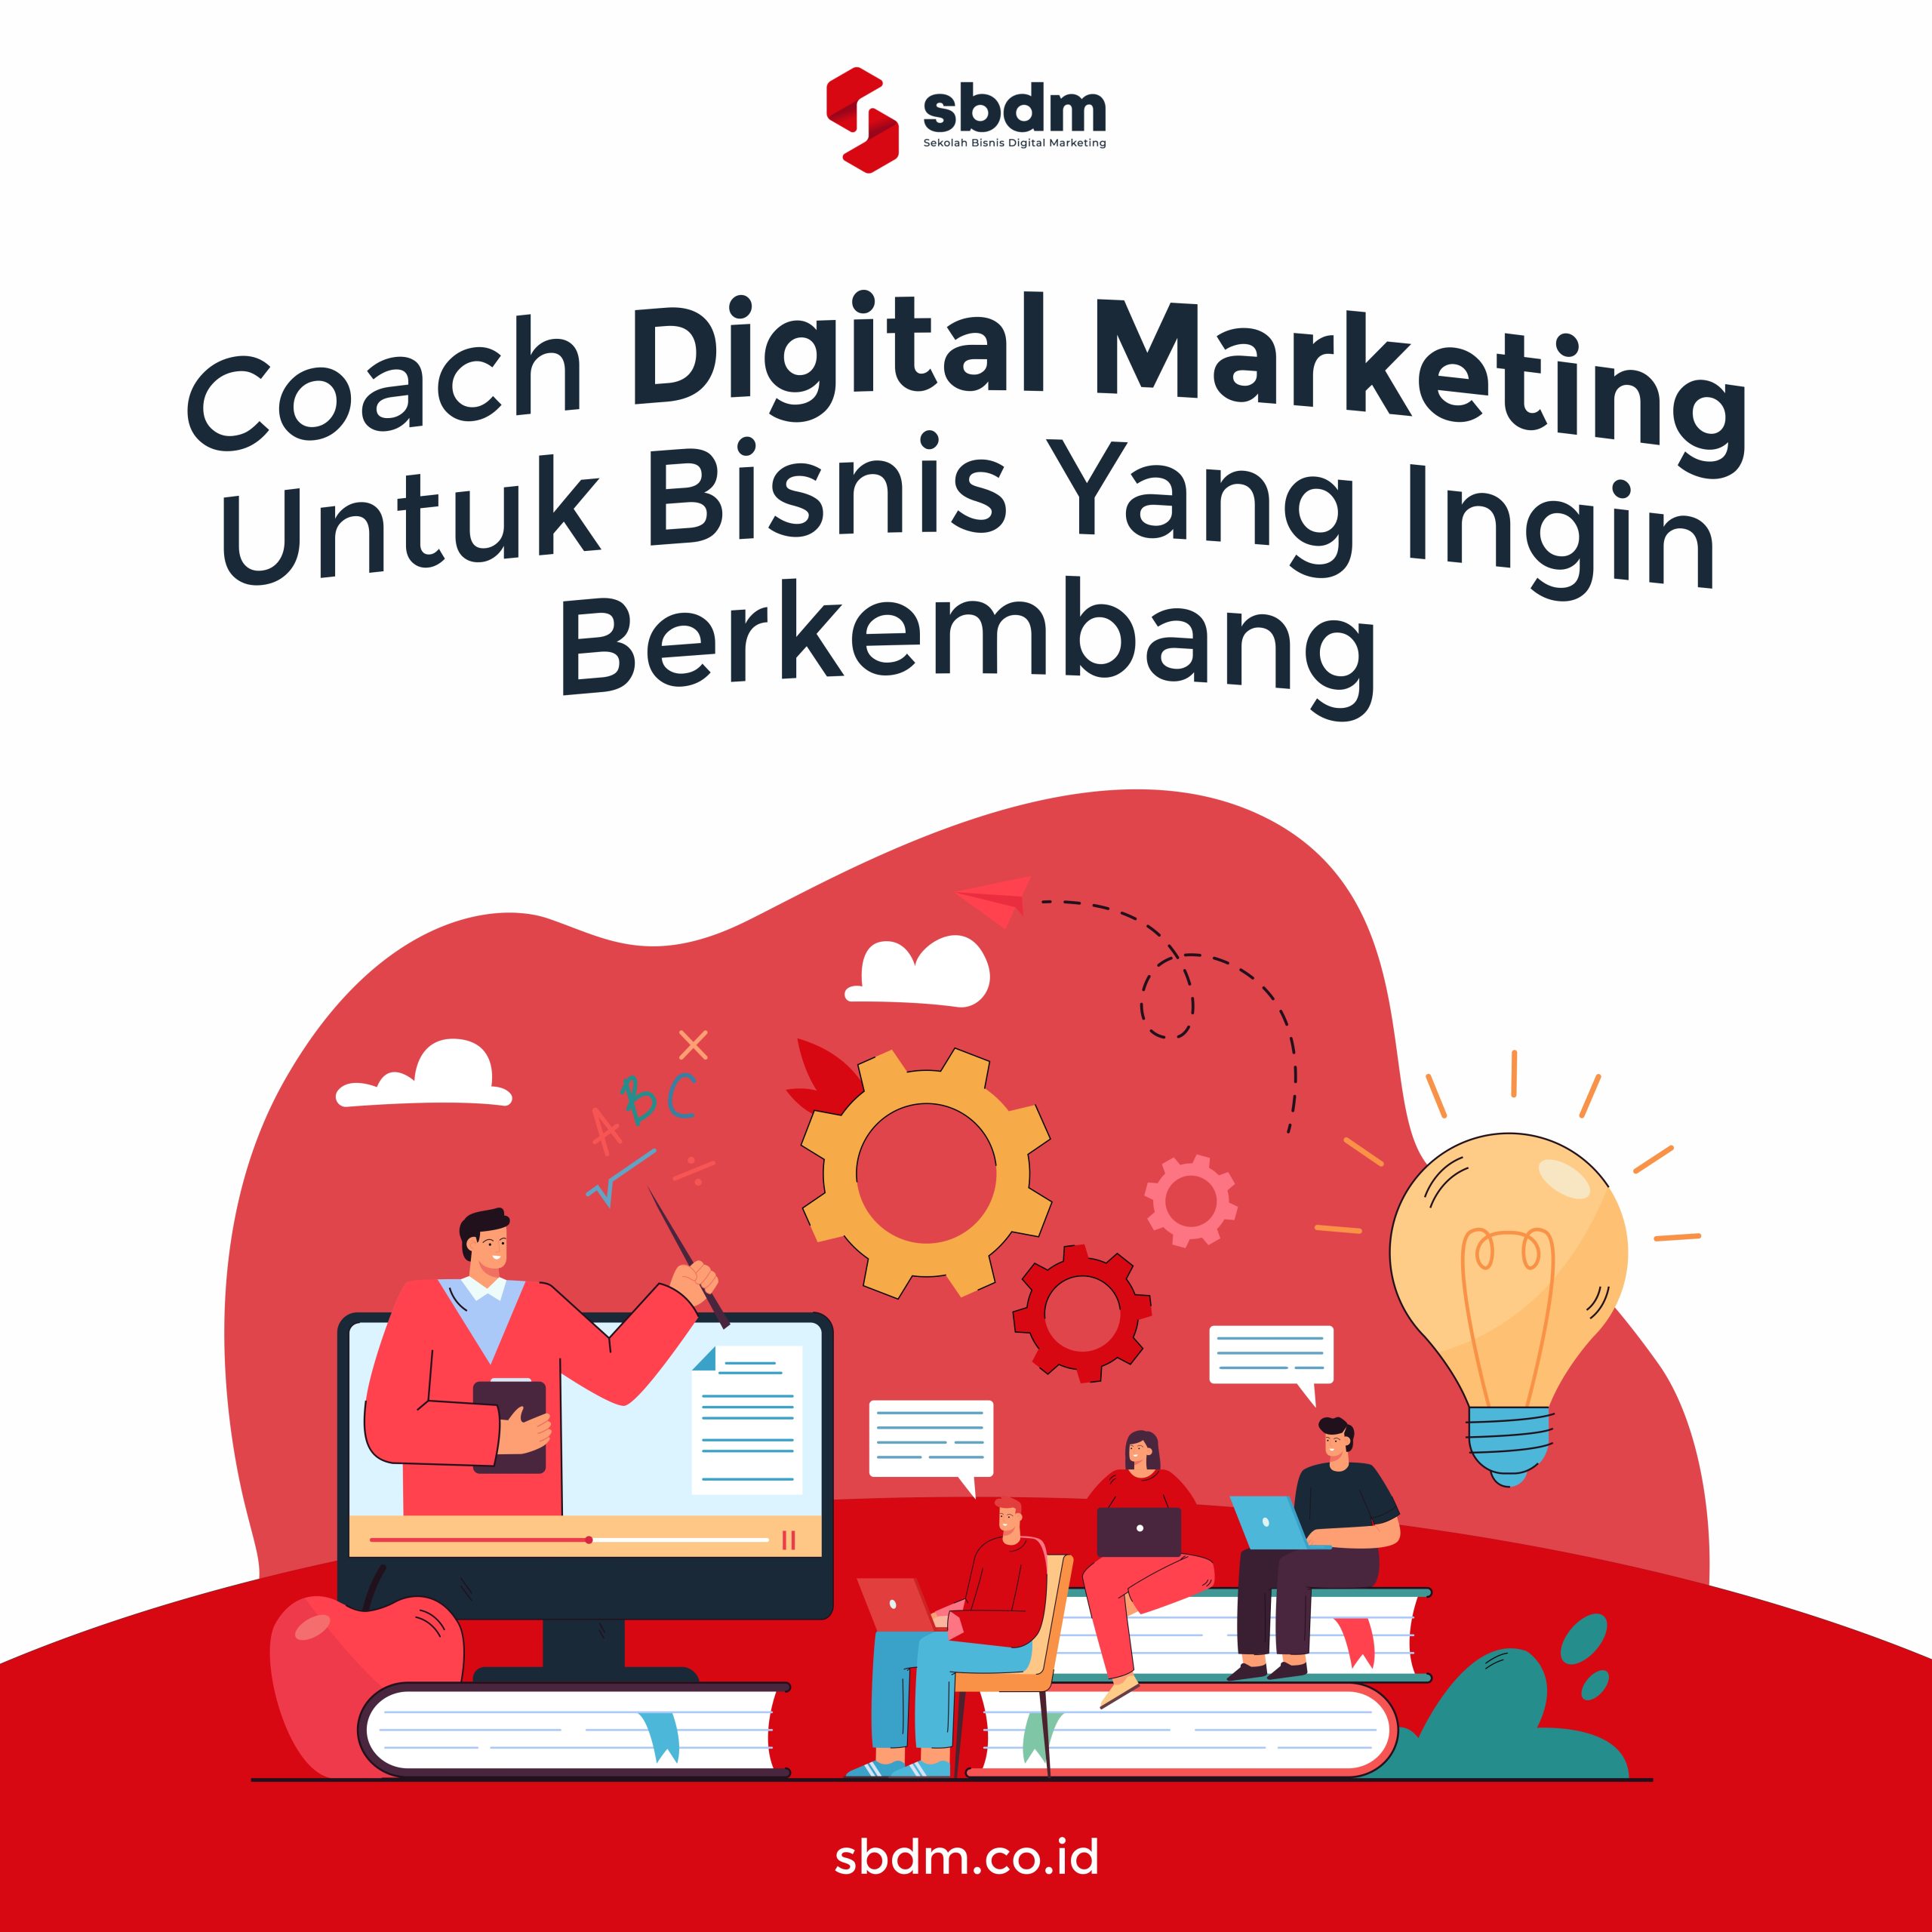 Coach Digital Marketing Untuk Bisnis Yang Ingin Berkembang.